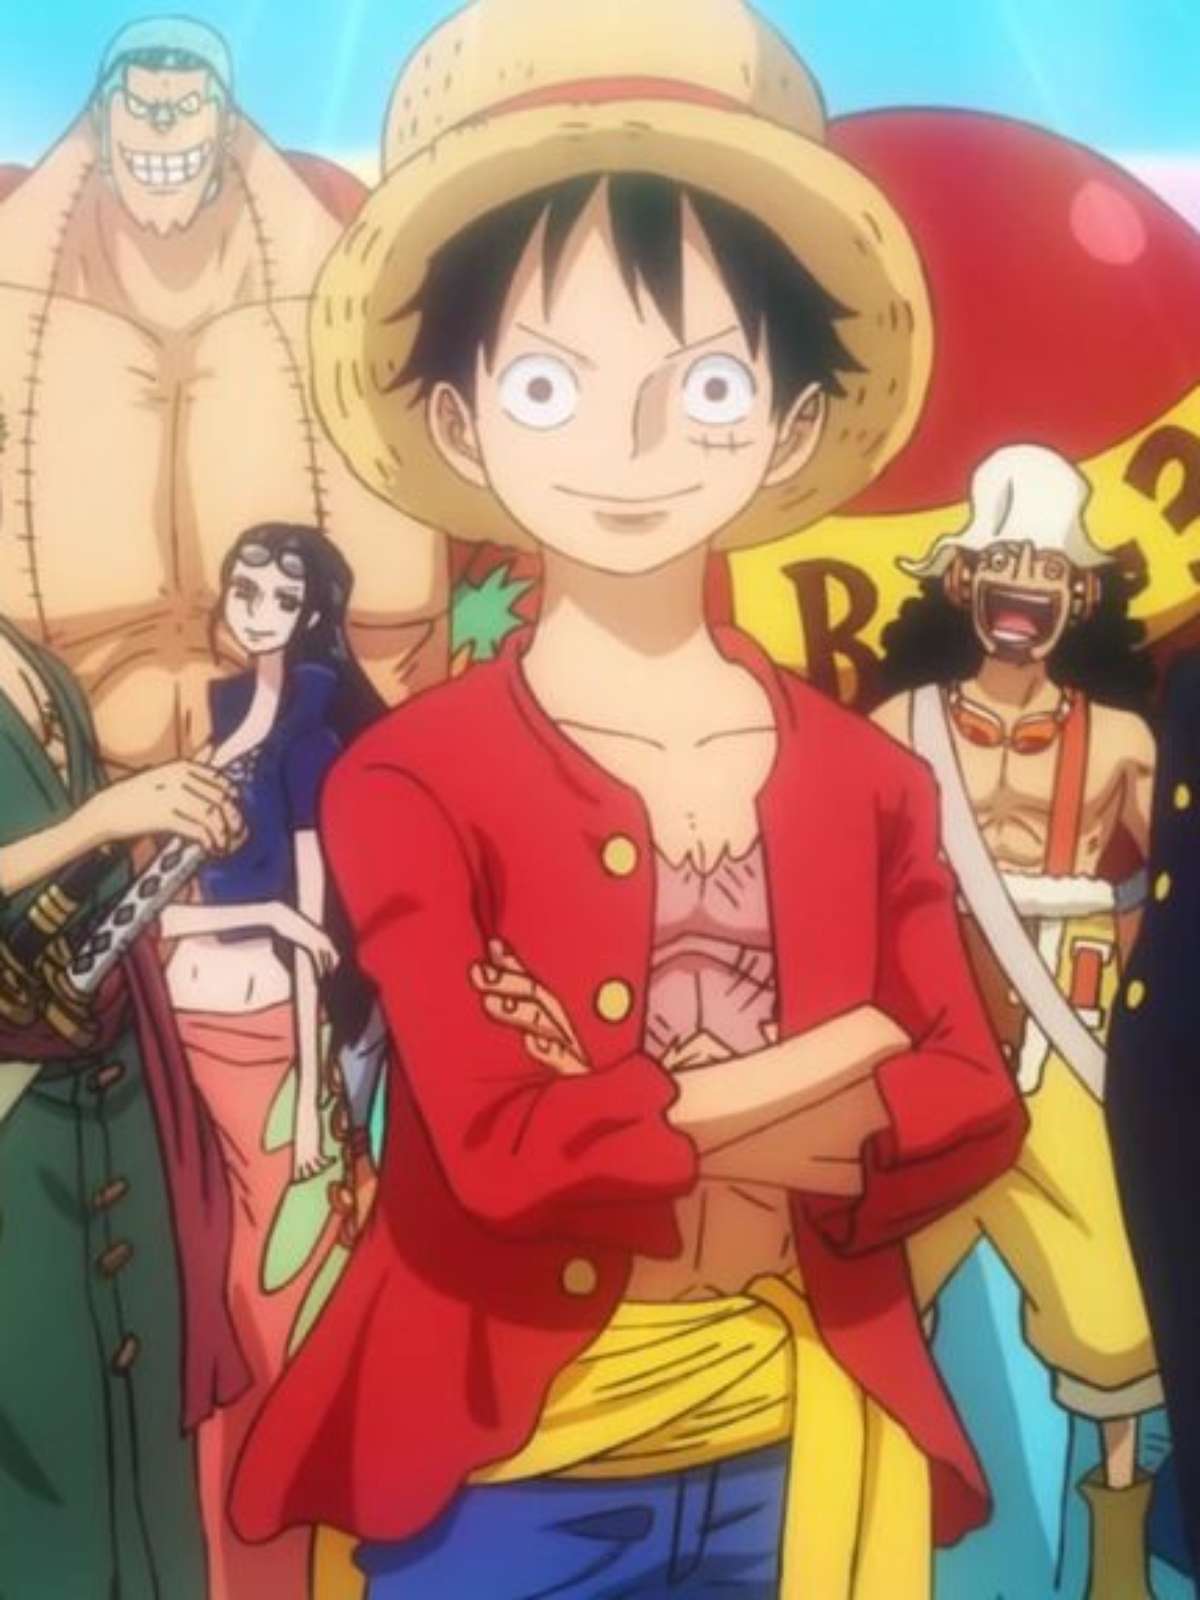 One Piece: Netflix vai adicionar mais 9 temporadas e filmes do anime